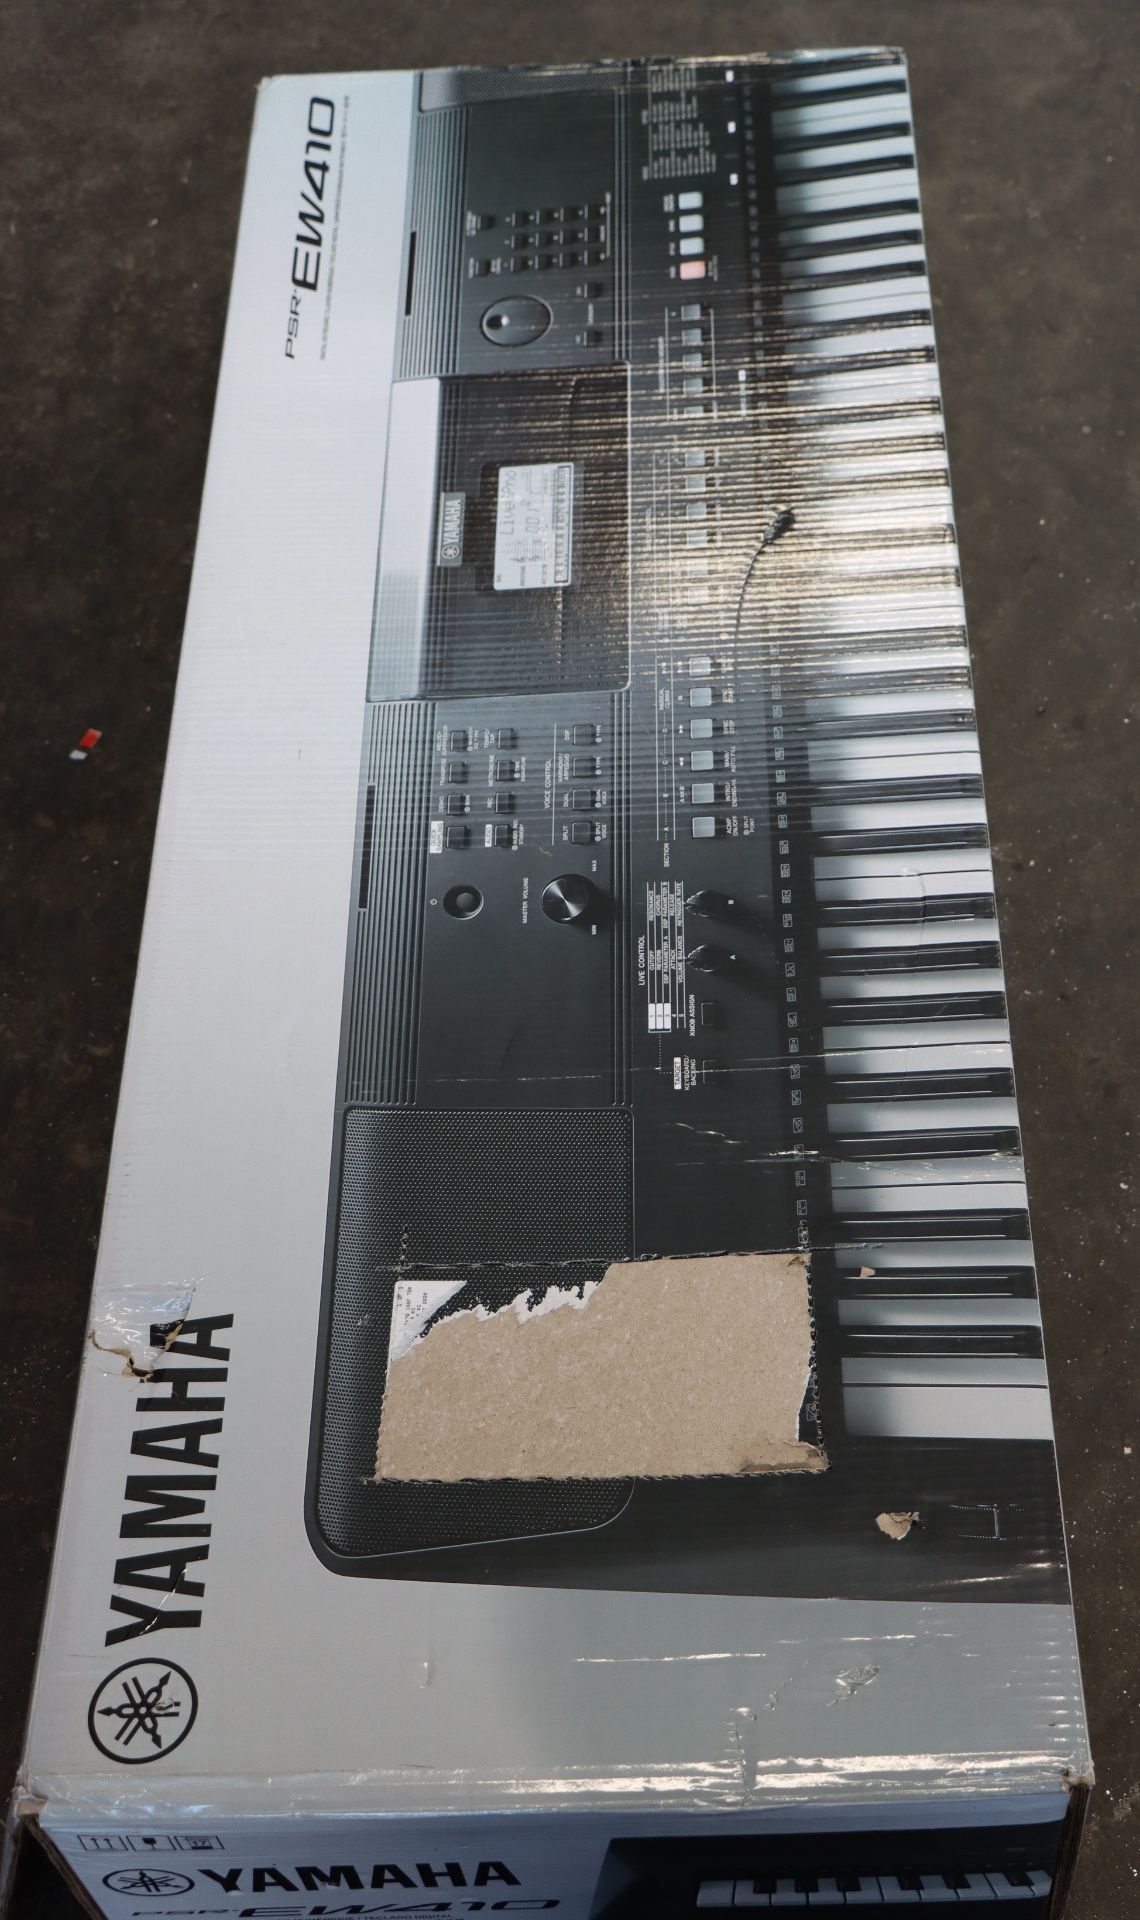 A boxed as new Yamaha PSR EW410 keyboard.